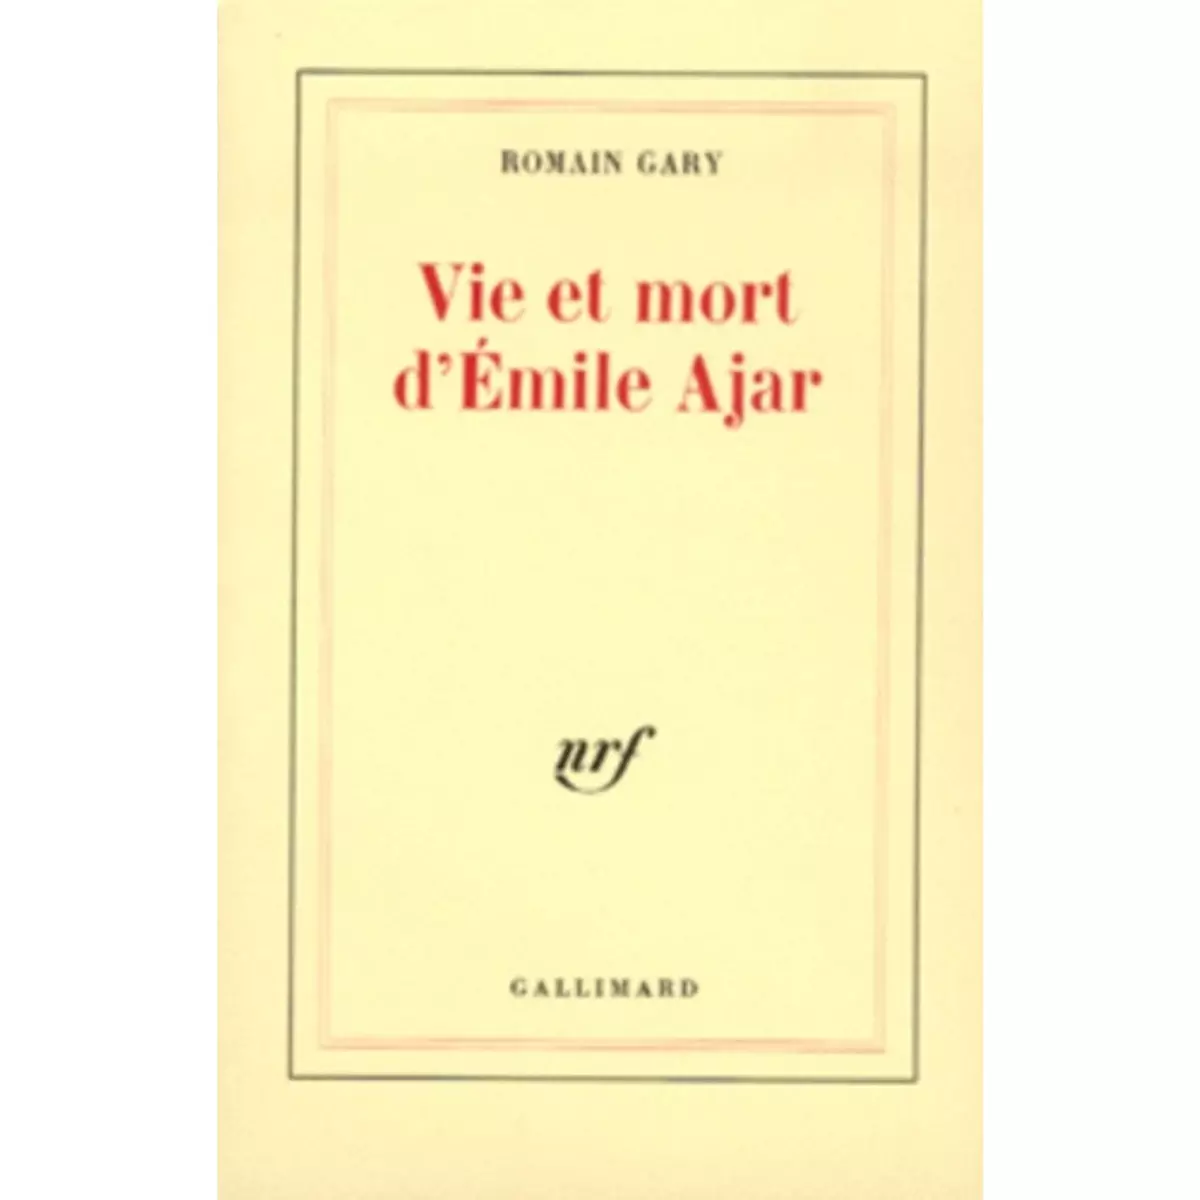  VIE ET MORT D'EMILE AJAR, Gary Romain